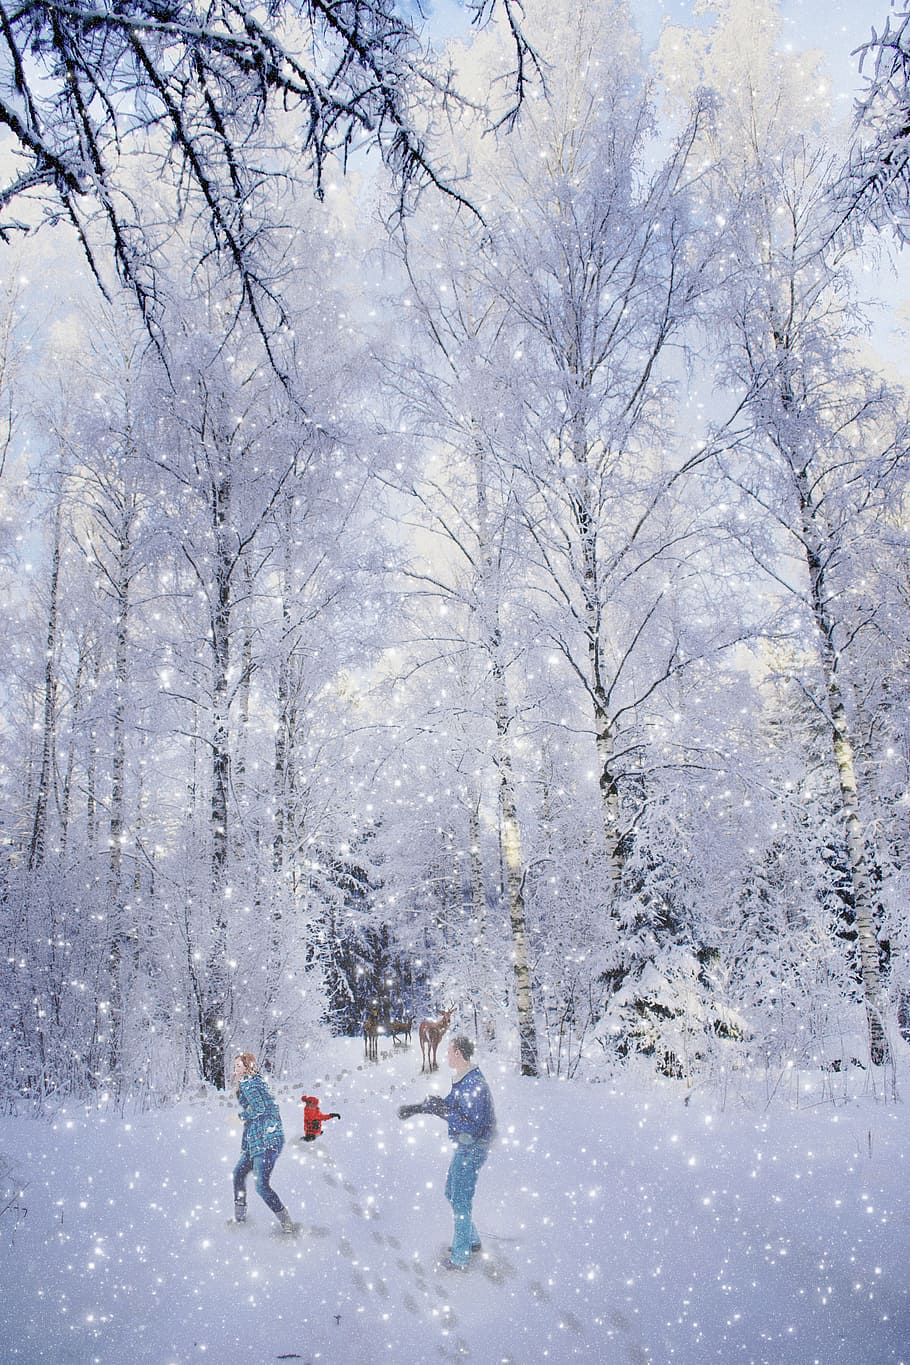 keluarga, musim dingin, kartu ucapan, kesenangan, anak, orang, salju, ibu, bersama-sama, kegembiraan